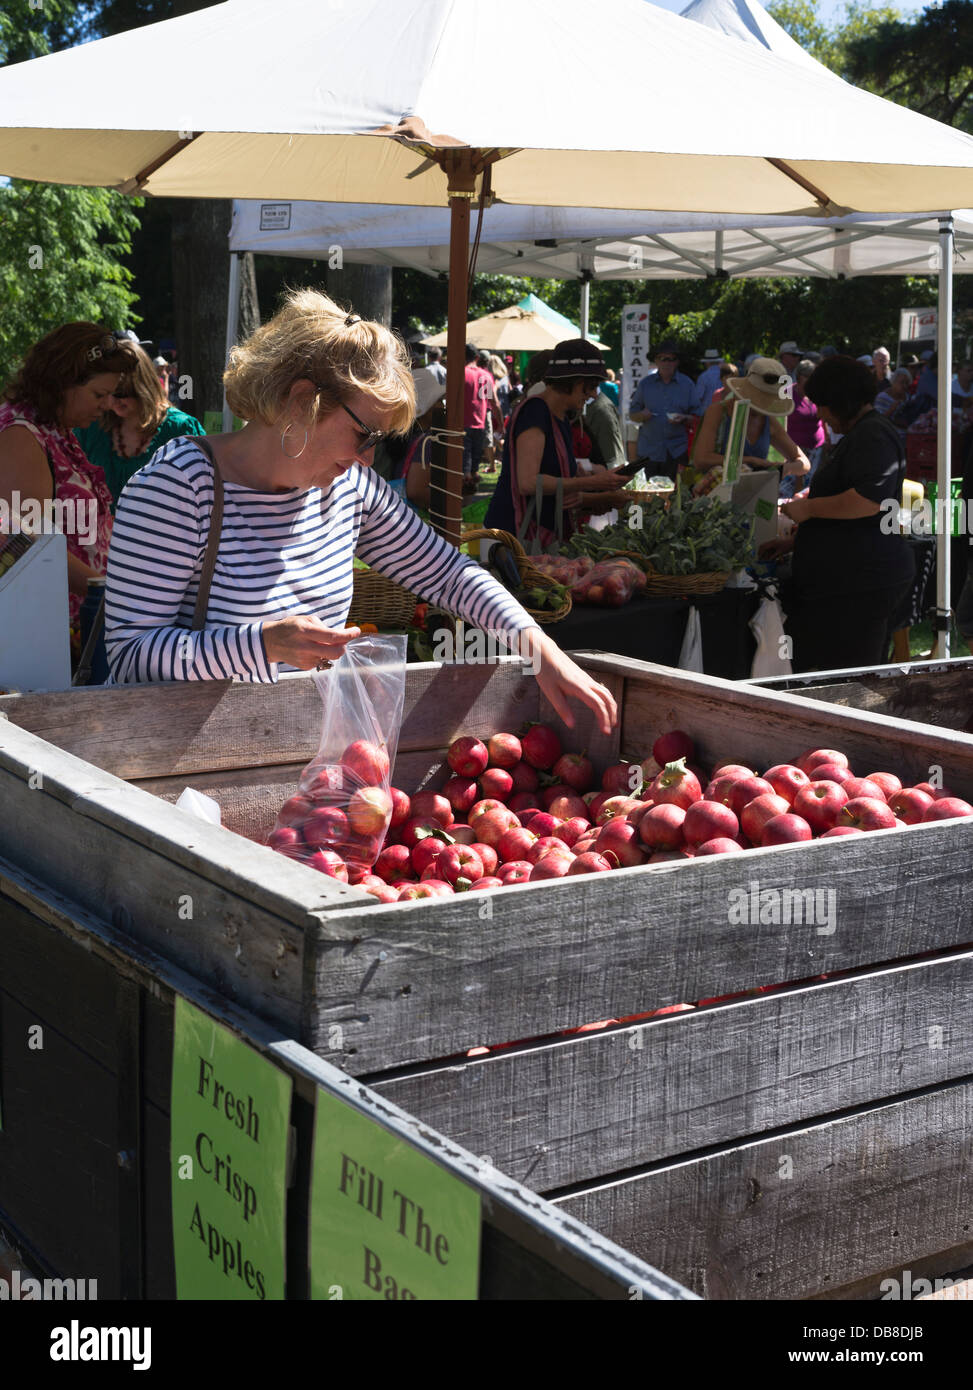 dh Domenica Farmers Market HASTINGS NUOVA ZELANDA Lady raccogliere frutta negozio alimentare verde hawkes bay cibo frutta fresca Foto Stock